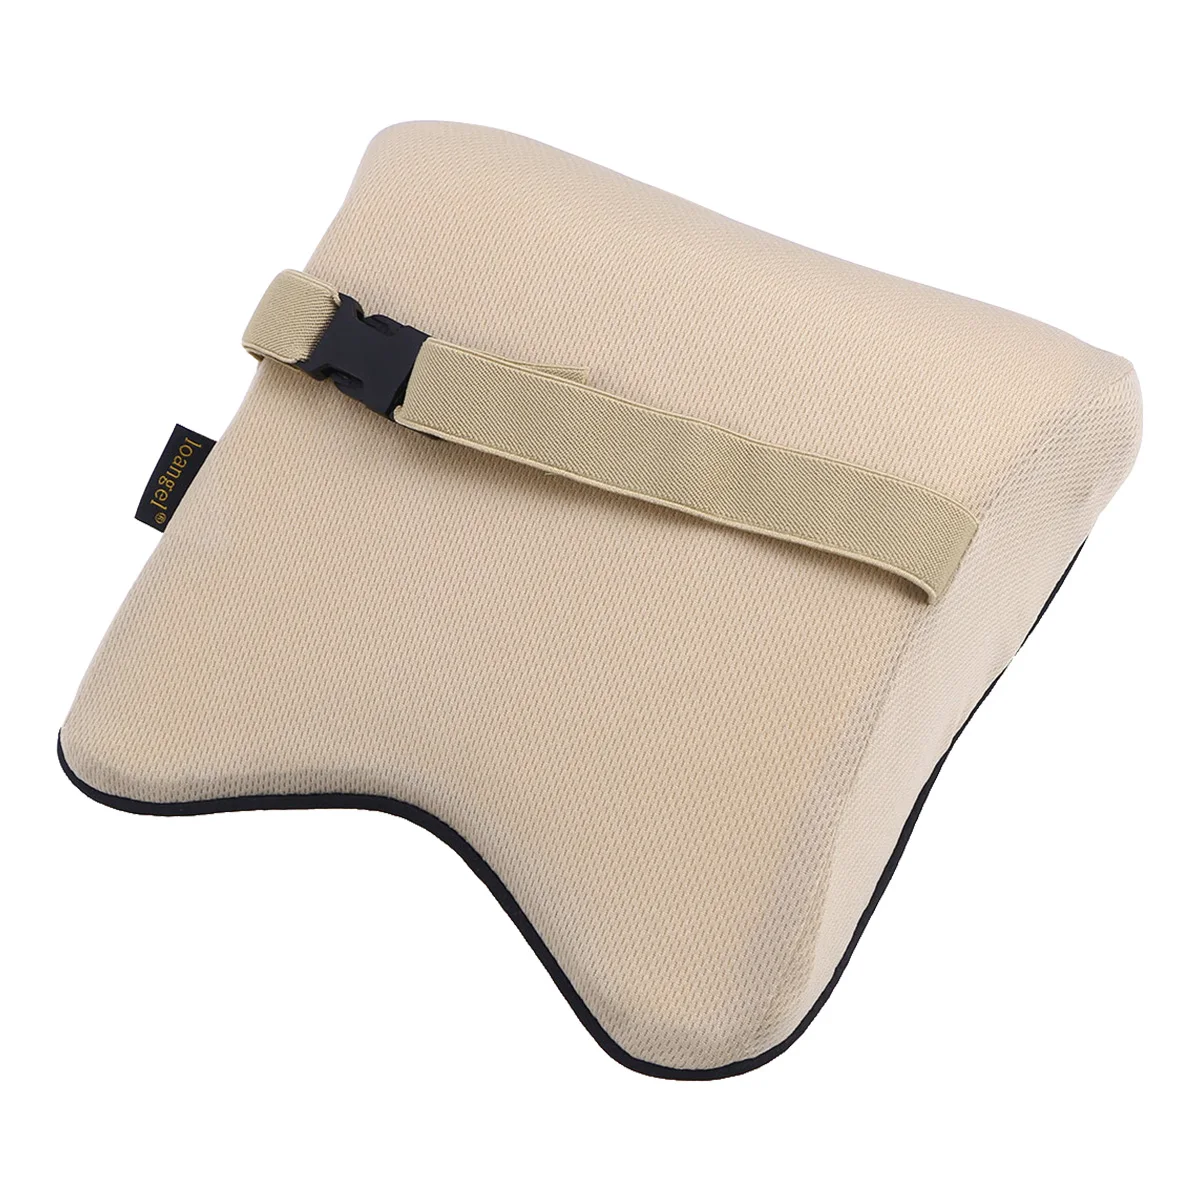 Универсальная автомобильная подушка из пеноматериала с вязкой и эластичной памятью регулируемая подушка для подголовника сиденья автомобиля А3